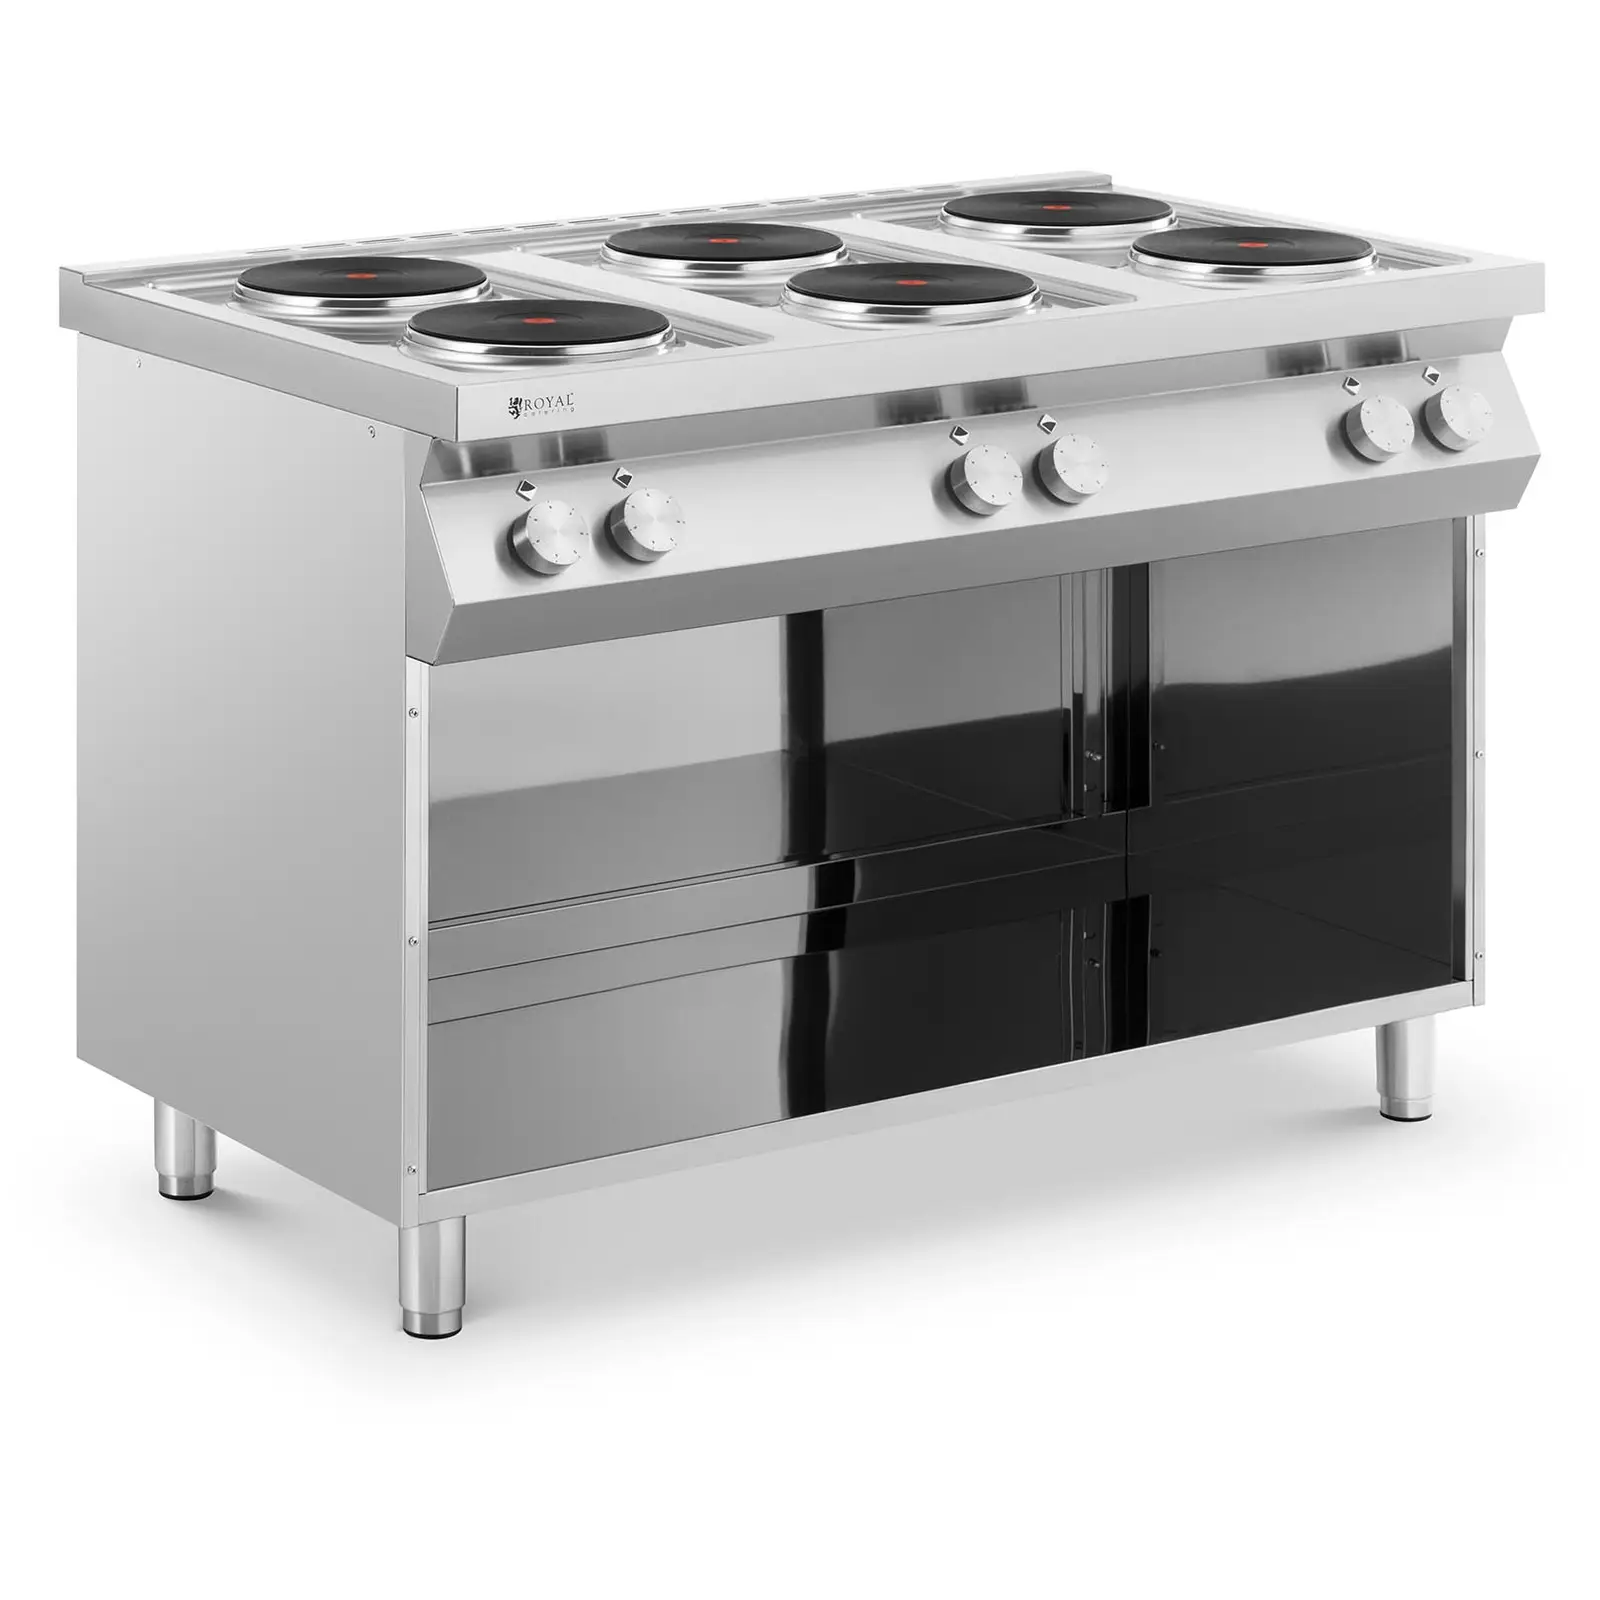 Ηλεκτρική κουζίνα - 15600 W - 6 πιάτα - ντουλάπι βάσης - Royal Catering